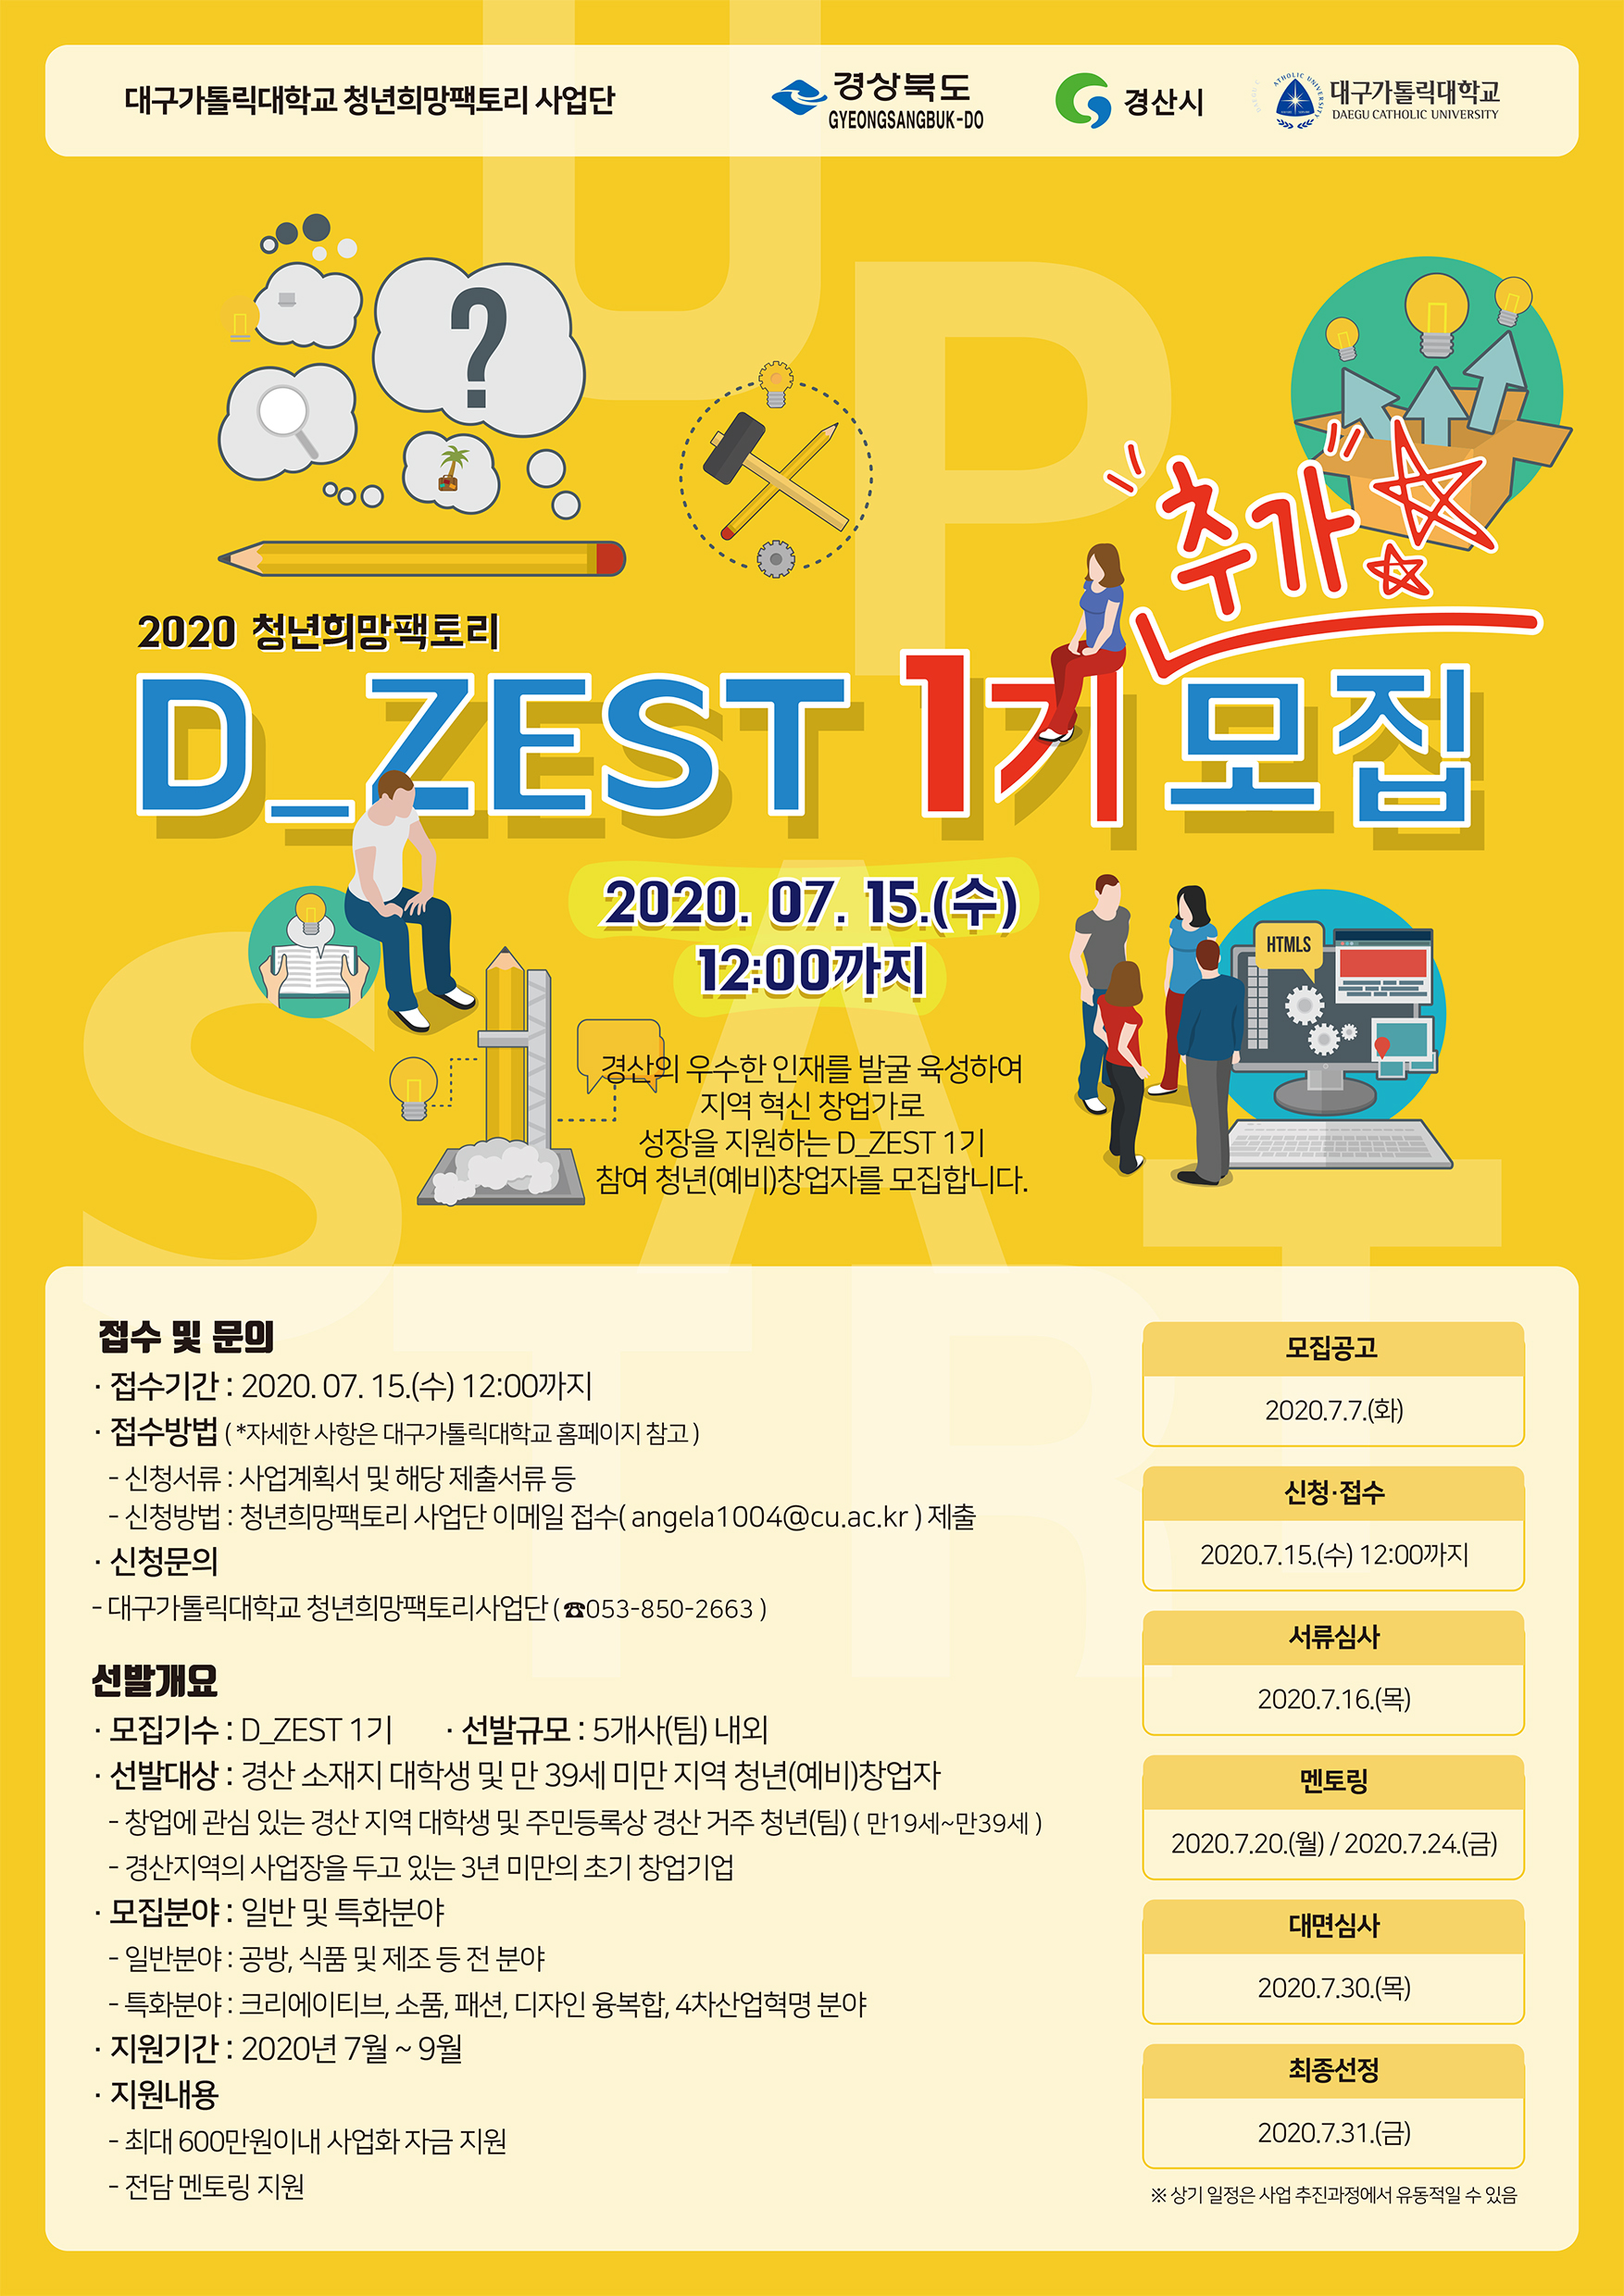 2020 청년희망팩토리 D_ZEST(1기) 추가모집 공고